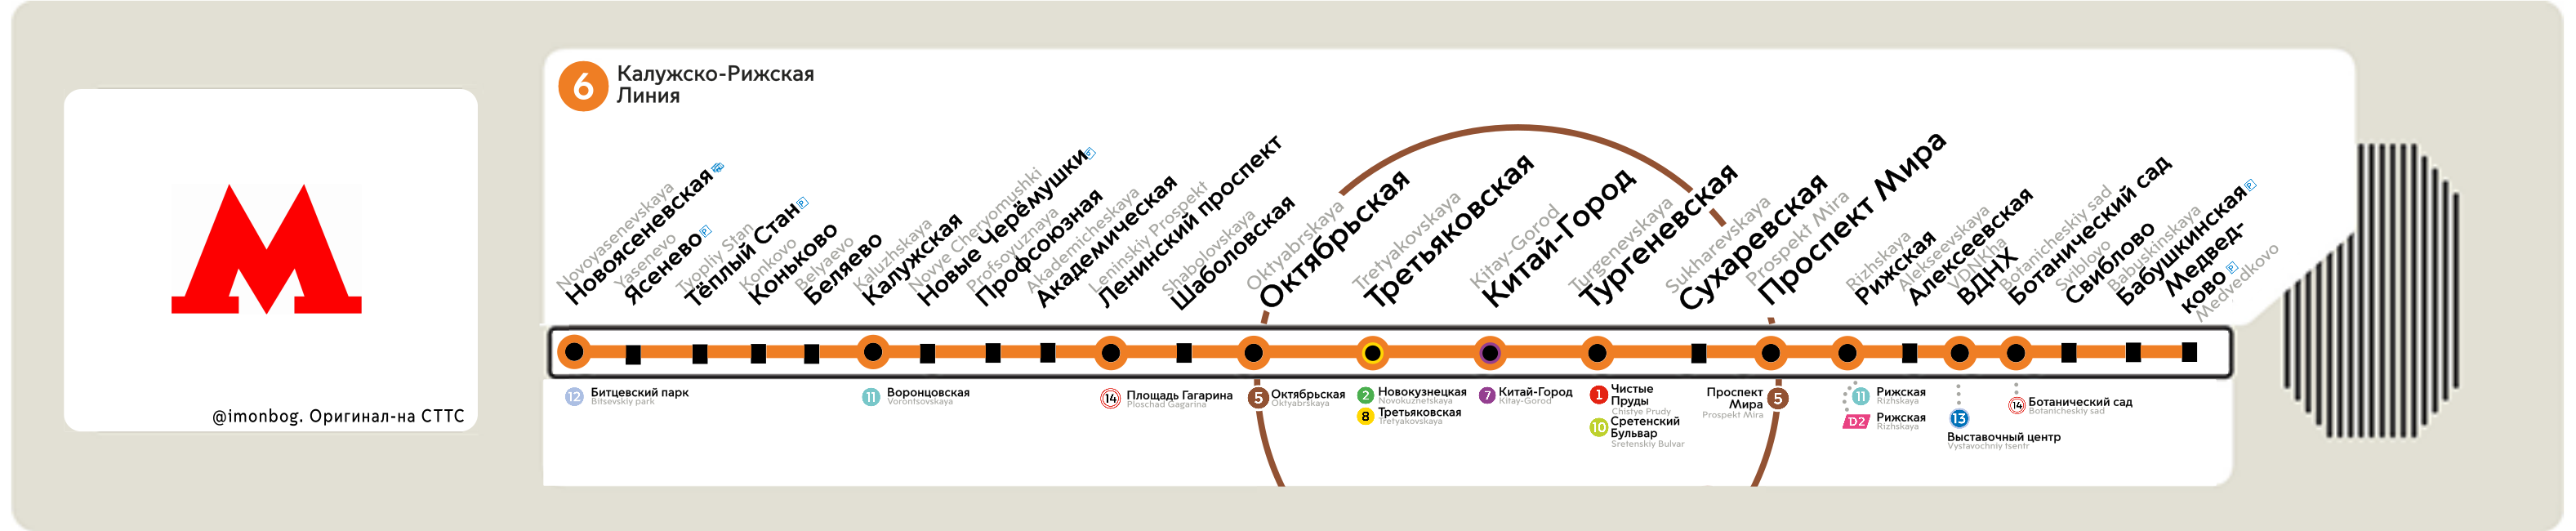 Москва — Метрополитен — Схемы отдельных линий